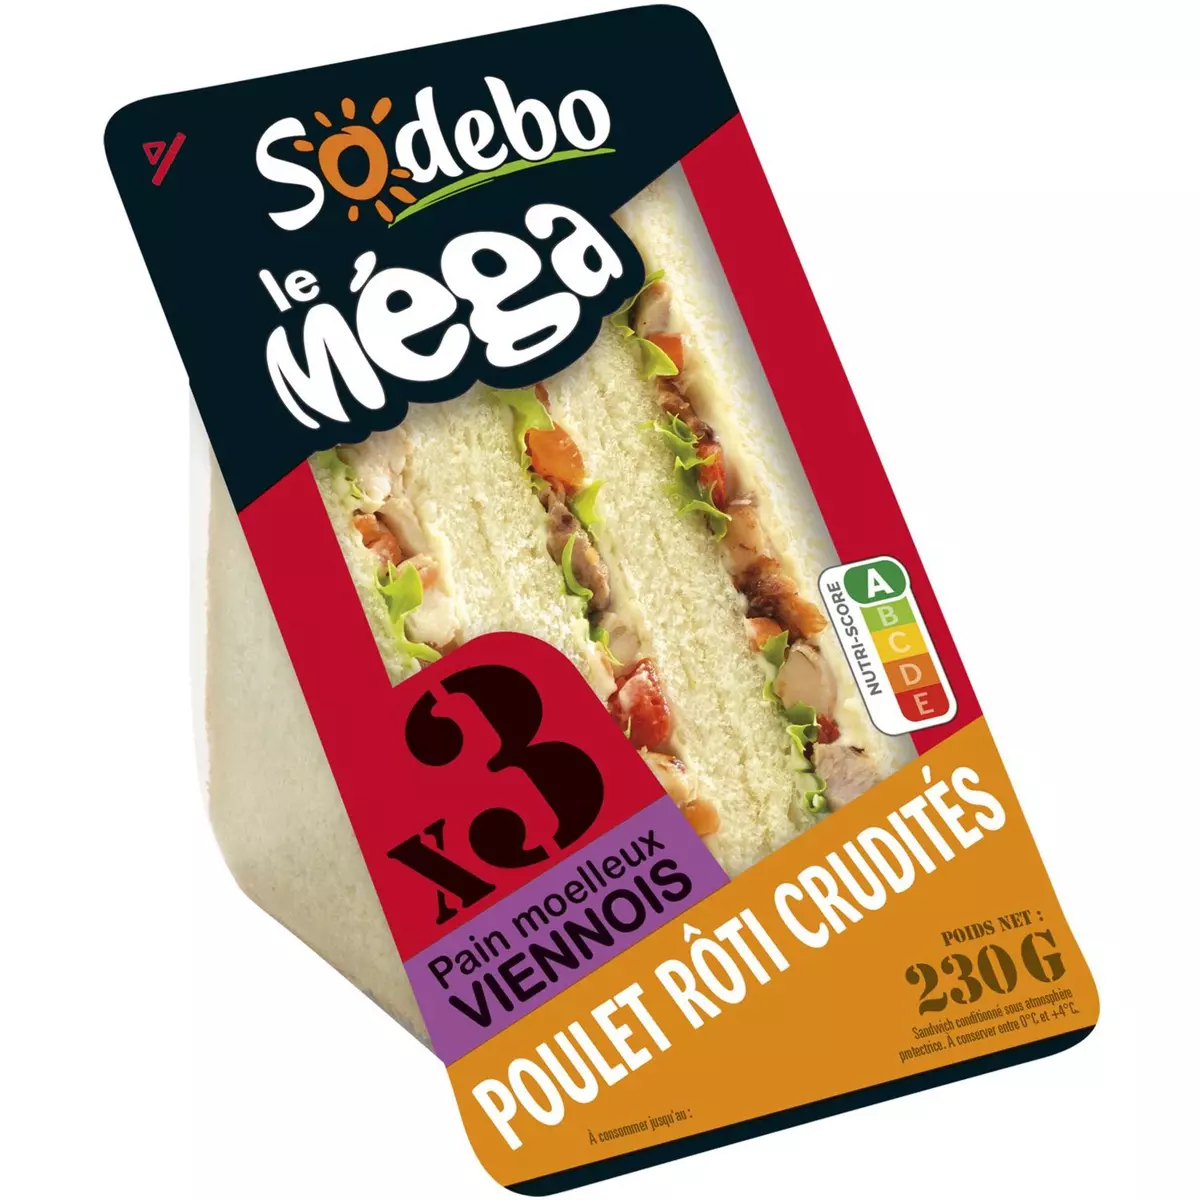 SODEBO Sandwich Méga pain viennois au poulet rôti crudités 230g